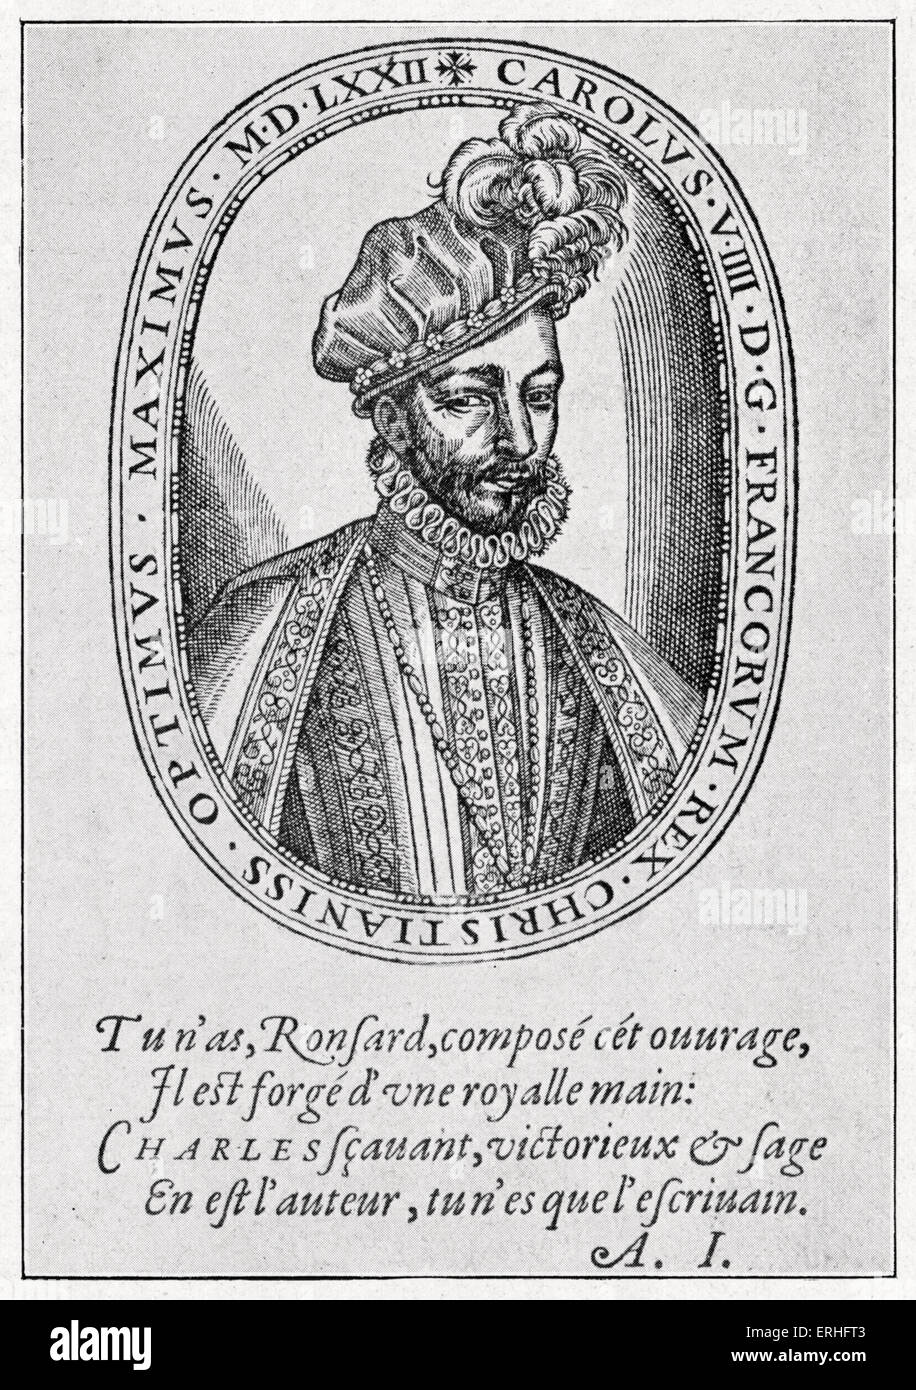 Charles IX - portrait, 1572. Monarque français, patron de la littérature et des arts de 1550 - 1574. Gravure anonyme / gravure sur bois Banque D'Images